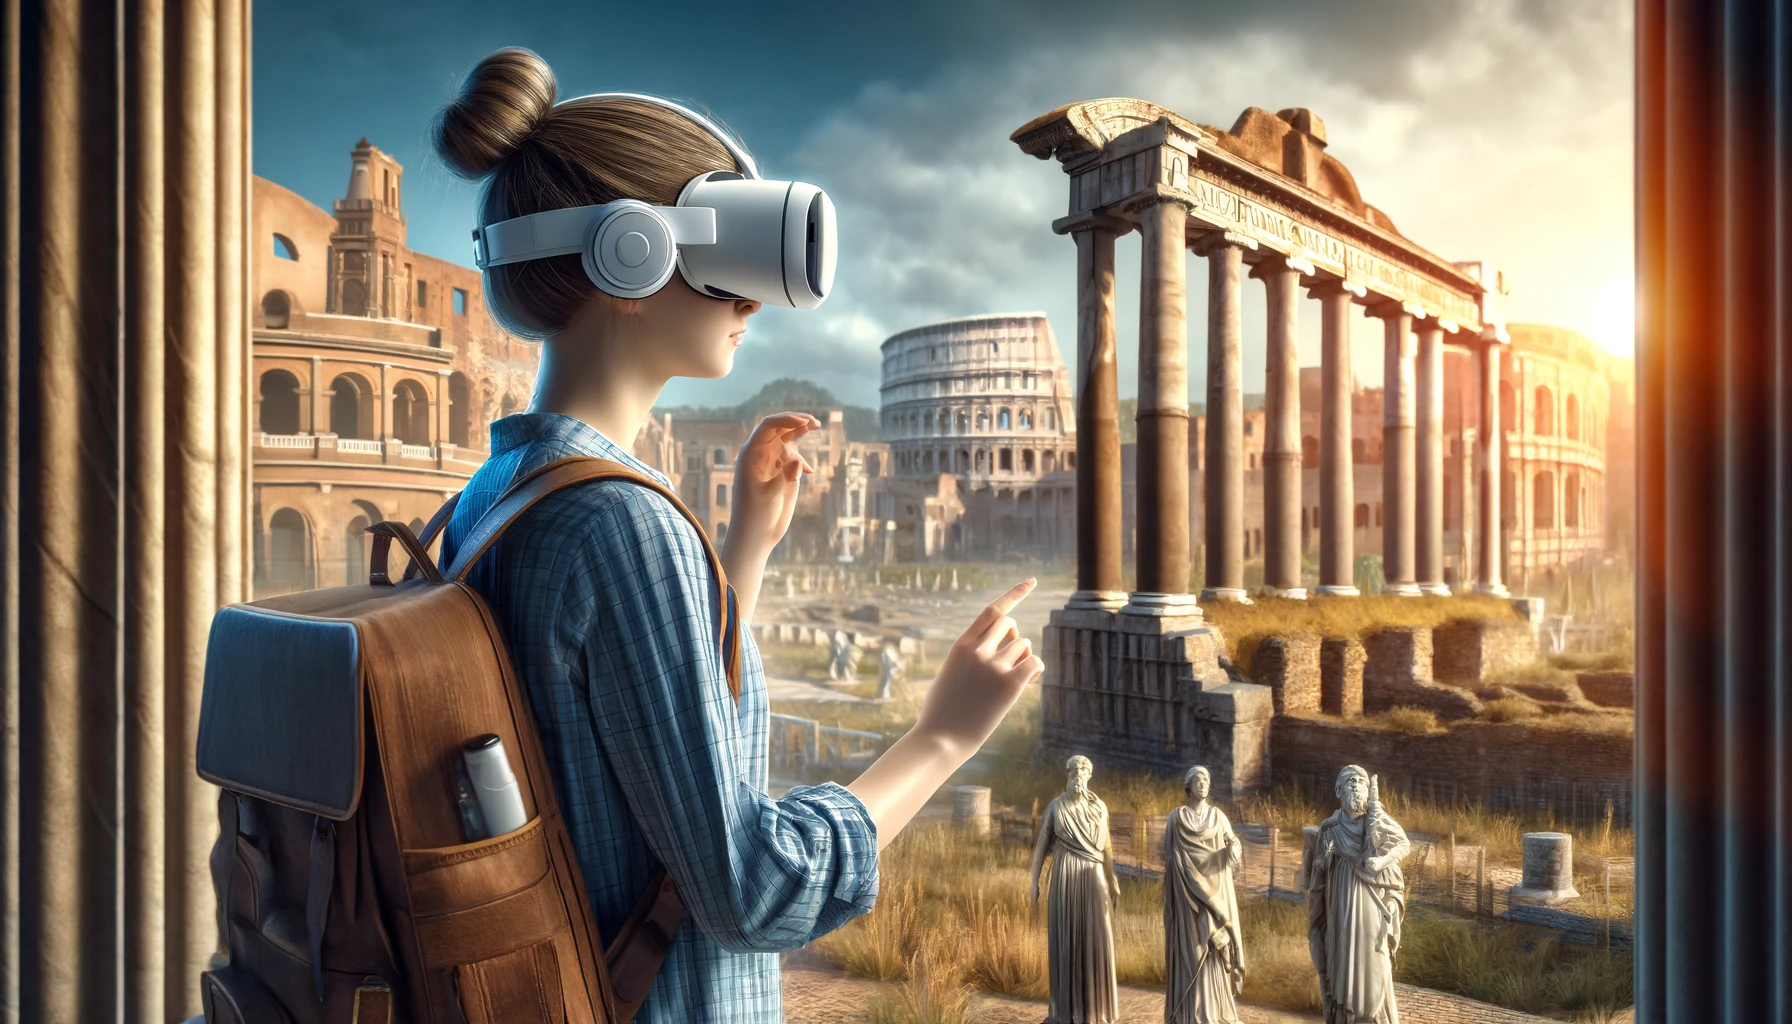 Una estudiante de secundaria usando realidad virtual para caminar por la antigua Roma, interactuando con personajes virtuales y puntos de referencia históricos. La imagen captura a la estudiante, una adolescente, usando un visor VR, en un entorno rico en detalles que incluye estructuras famosas como el Coliseo y el Foro.